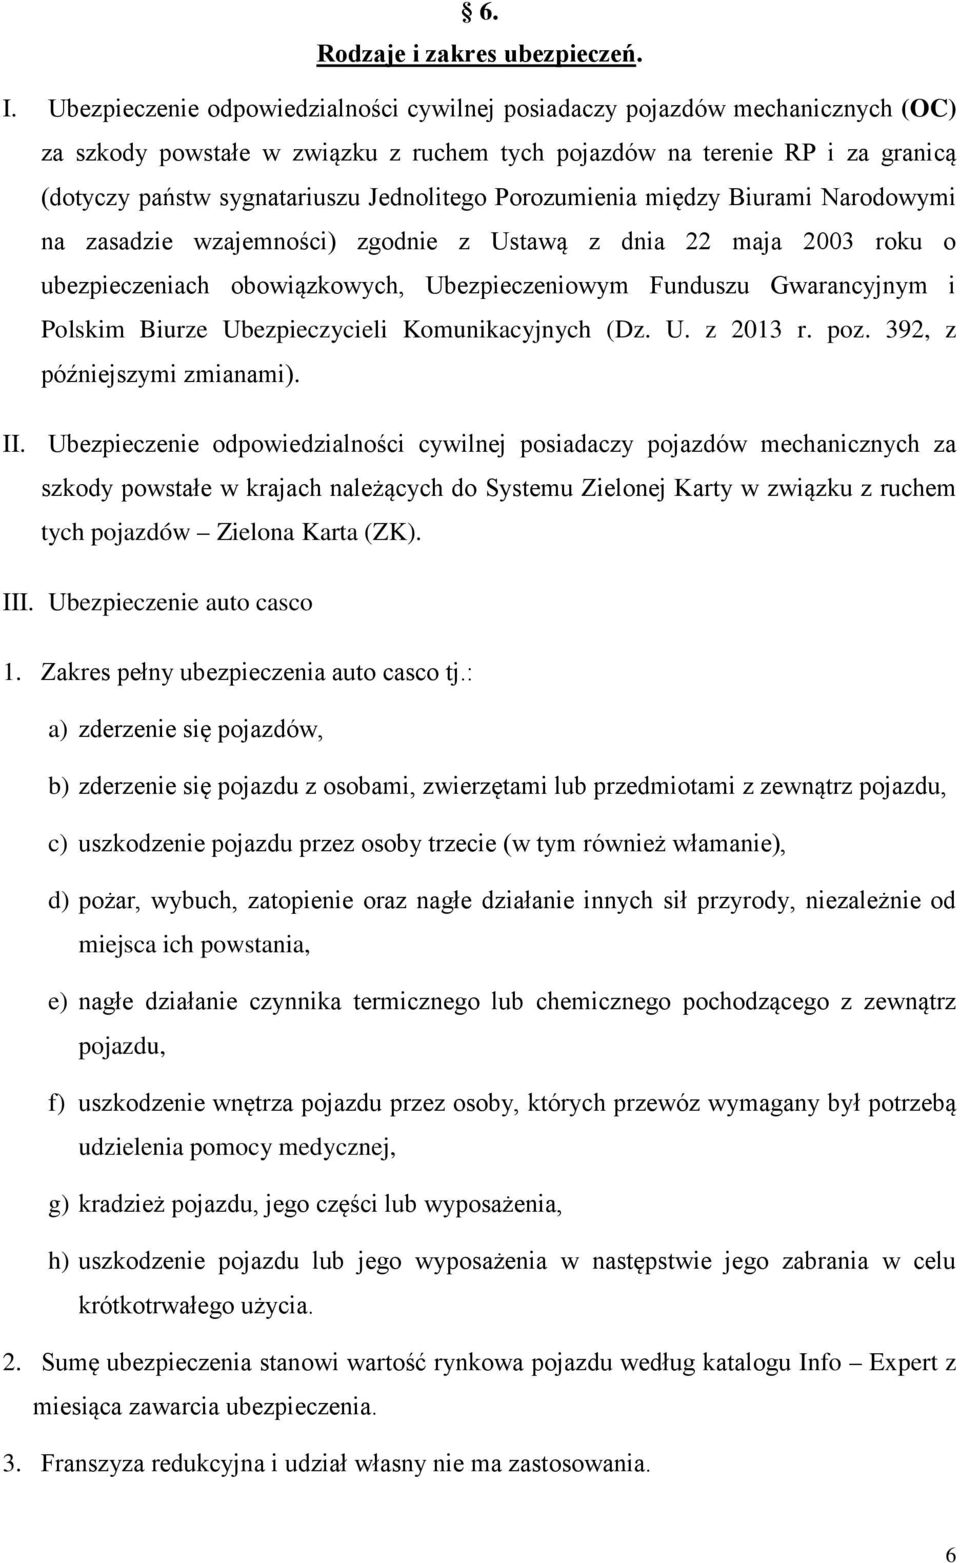 Jednolitego Porozumienia między Biurami Narodowymi na zasadzie wzajemności) zgodnie z Ustawą z dnia 22 maja 2003 roku o ubezpieczeniach obowiązkowych, Ubezpieczeniowym Funduszu Gwarancyjnym i Polskim